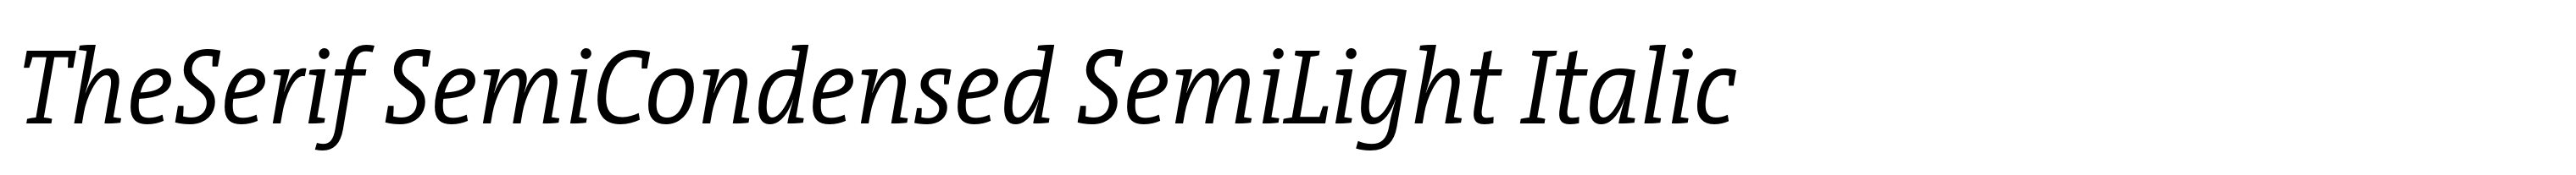 TheSerif SemiCondensed SemiLight Italic